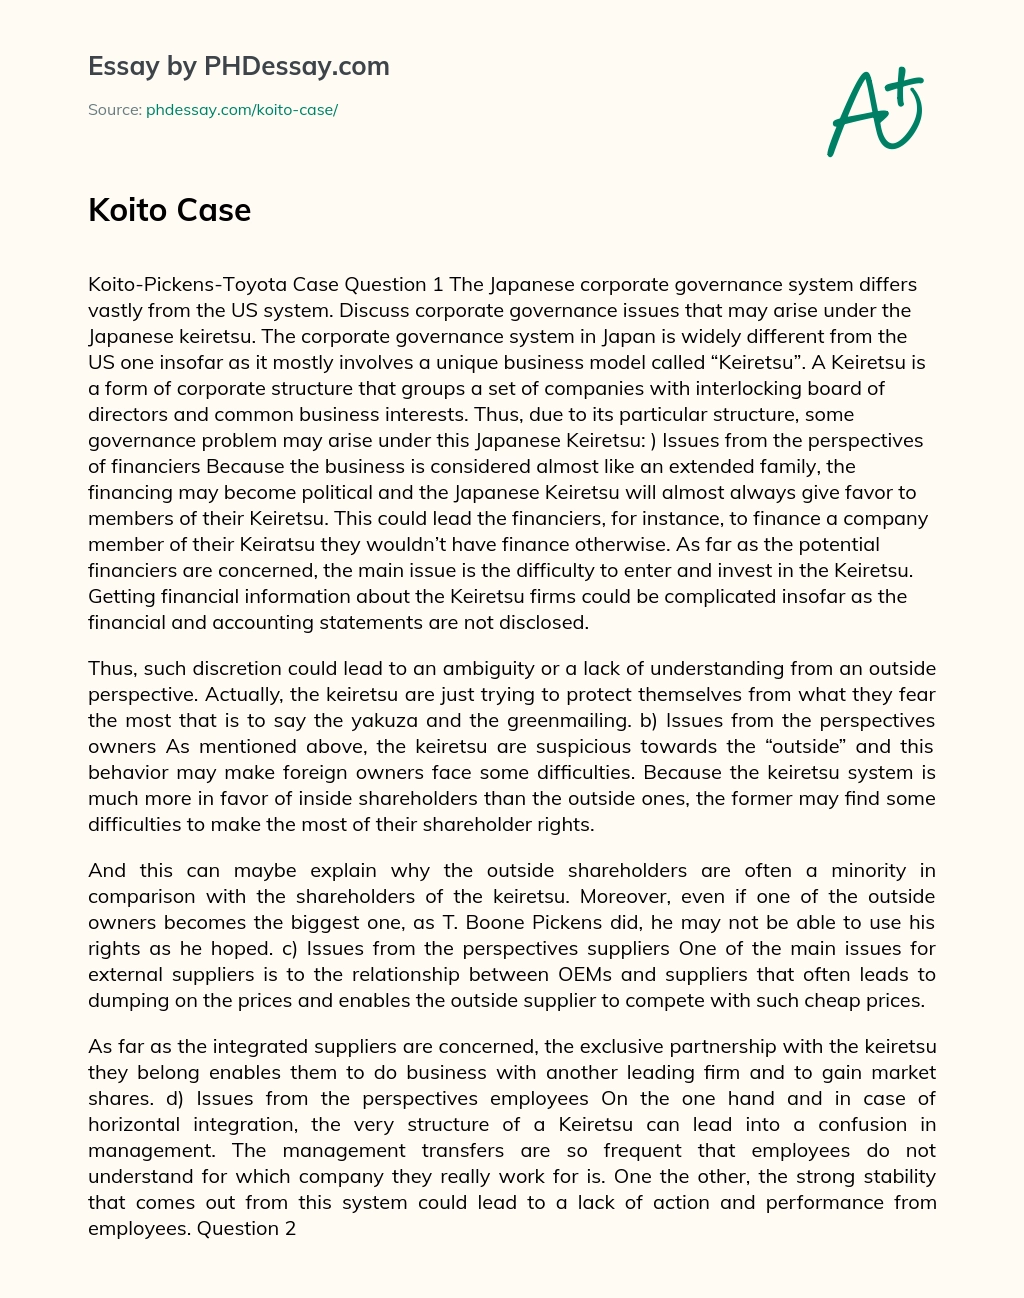 Koito Case essay